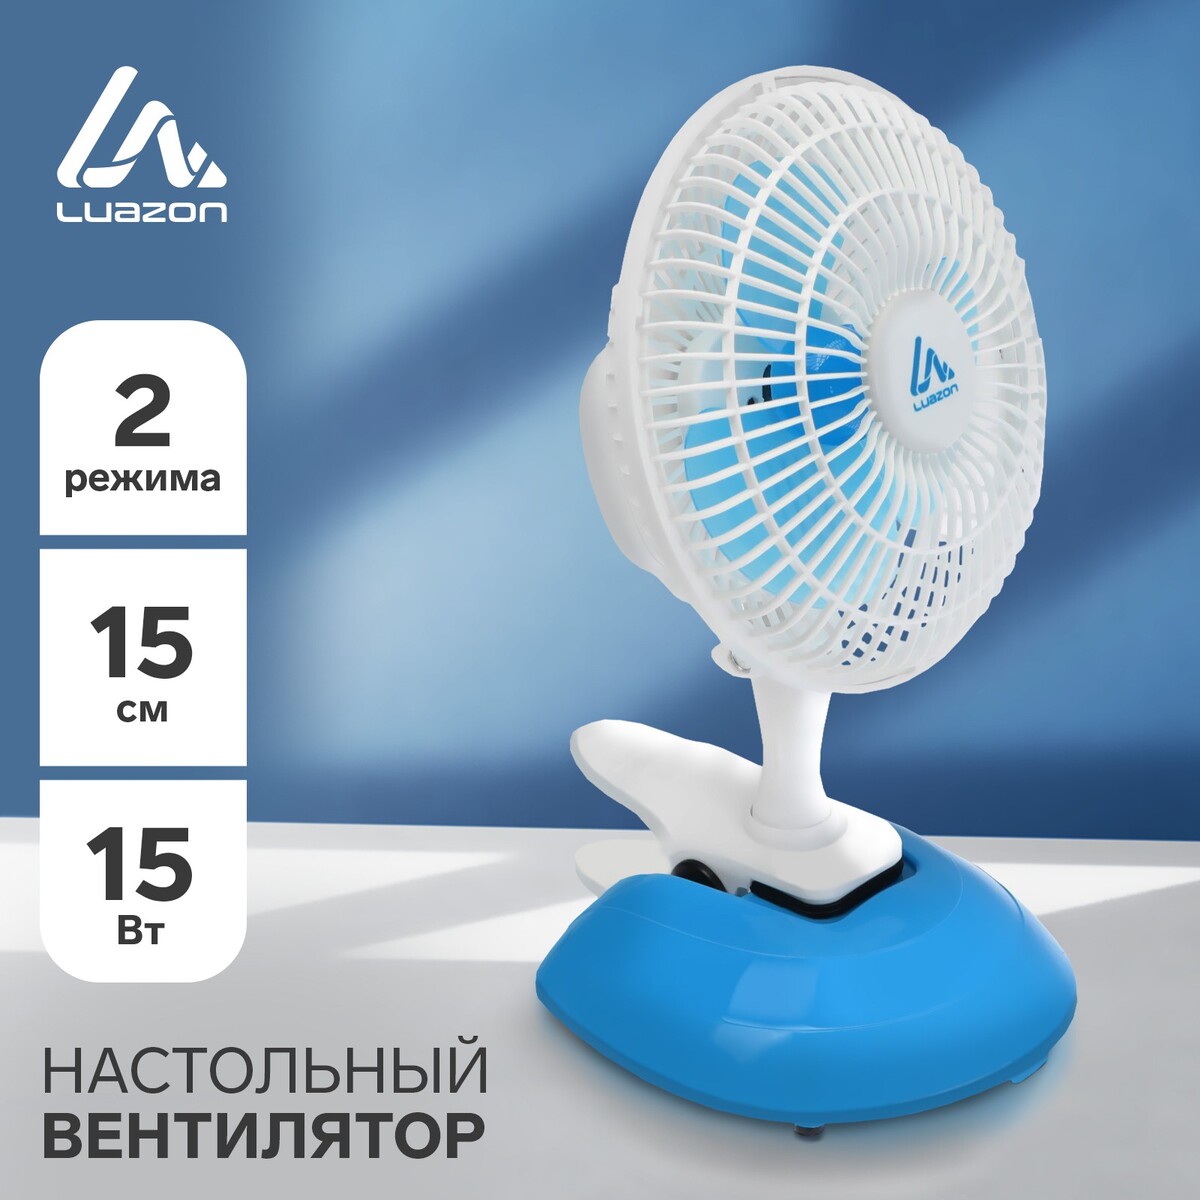 Вентилятор luazon lof-04, настольный, 15 вт, 15 см, 2 режима, пластик, бело-голубой вентилятор для корпуса inwin sirius pure asp120 6144473